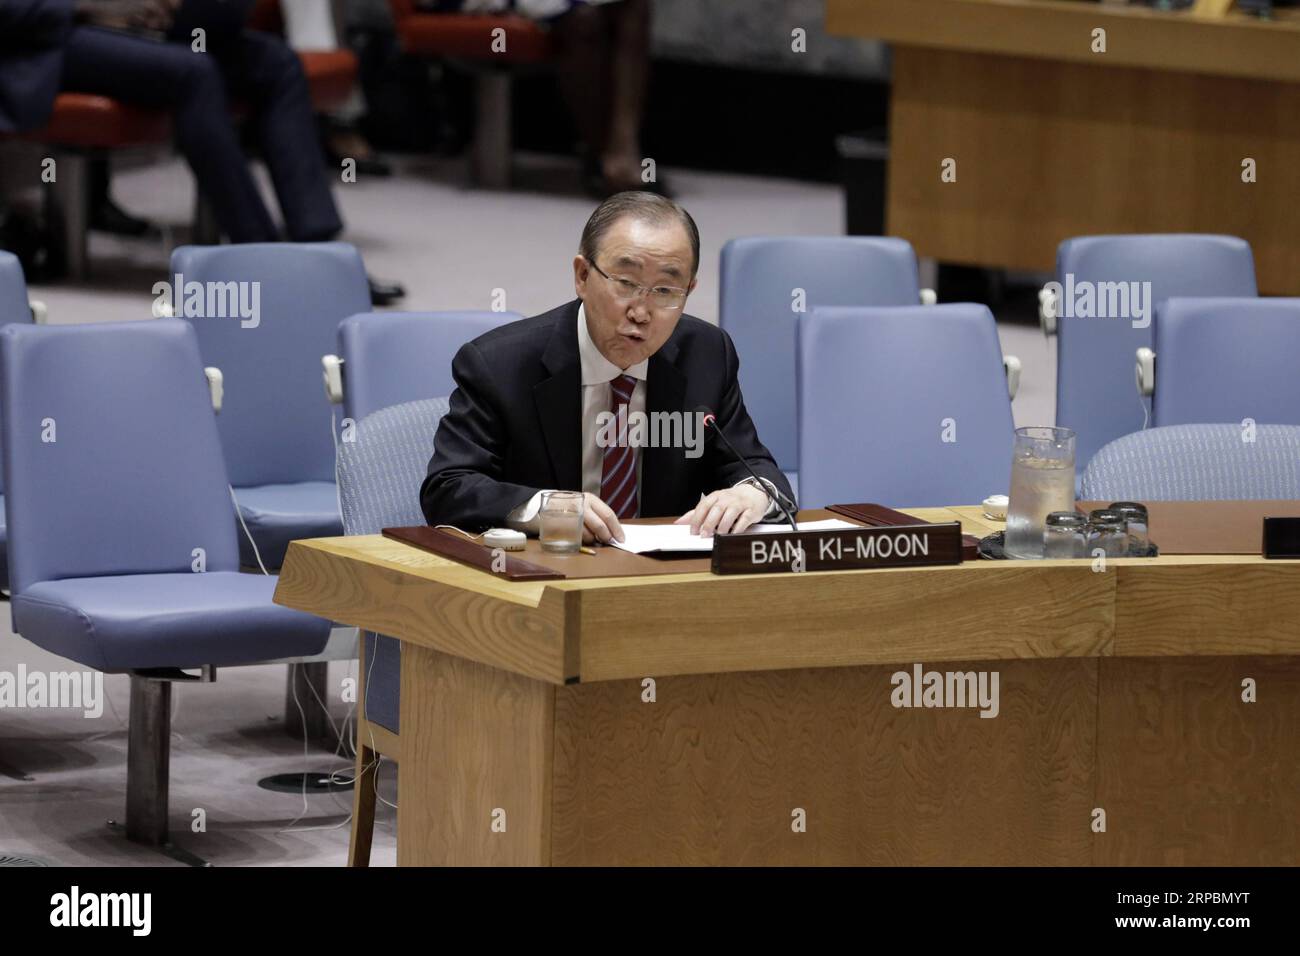 (190612) -- VEREINTEN NATIONEN, 12. Juni 2019 -- Ban Ki-moon, ehemaliger Generalsekretär der Vereinten Nationen und derzeitiger stellvertretender Vorsitzender der Ältesten, erläutert eine Sitzung des Sicherheitsrats über Konfliktverhütung und Meditation im Hauptquartier der Vereinten Nationen in New York, 12. Juni 2019. Ban Ki-moon sagte am Mittwoch, dass eine starke und gemeinsame Stimme des Sicherheitsrats angesichts des wachsenden Populismus und Isolationismus in der ganzen Welt mehr denn je benötigt wird. ) VN-SICHERHEITSRAT-TAGUNG-KONFLIKTPRÄVENTION UND MEDITATION LIXMUZI PUBLICATIONXNOTXINXCHN Stockfoto